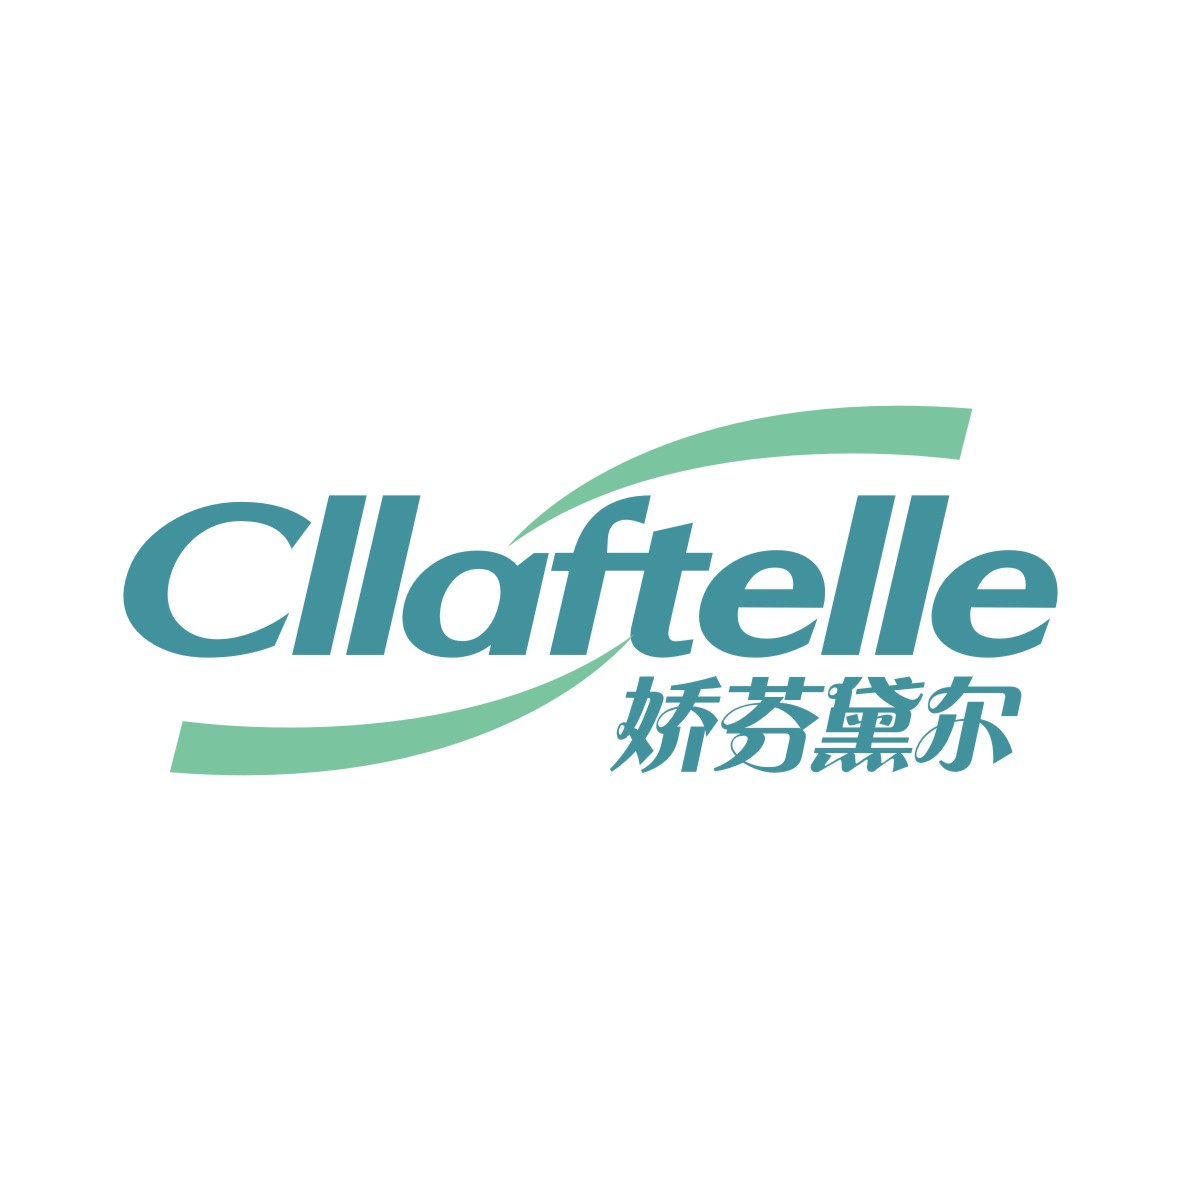 黎玲玲商标娇芬黛尔 CLLAFTELLE（21类）商标买卖平台报价，上哪个平台最省钱？